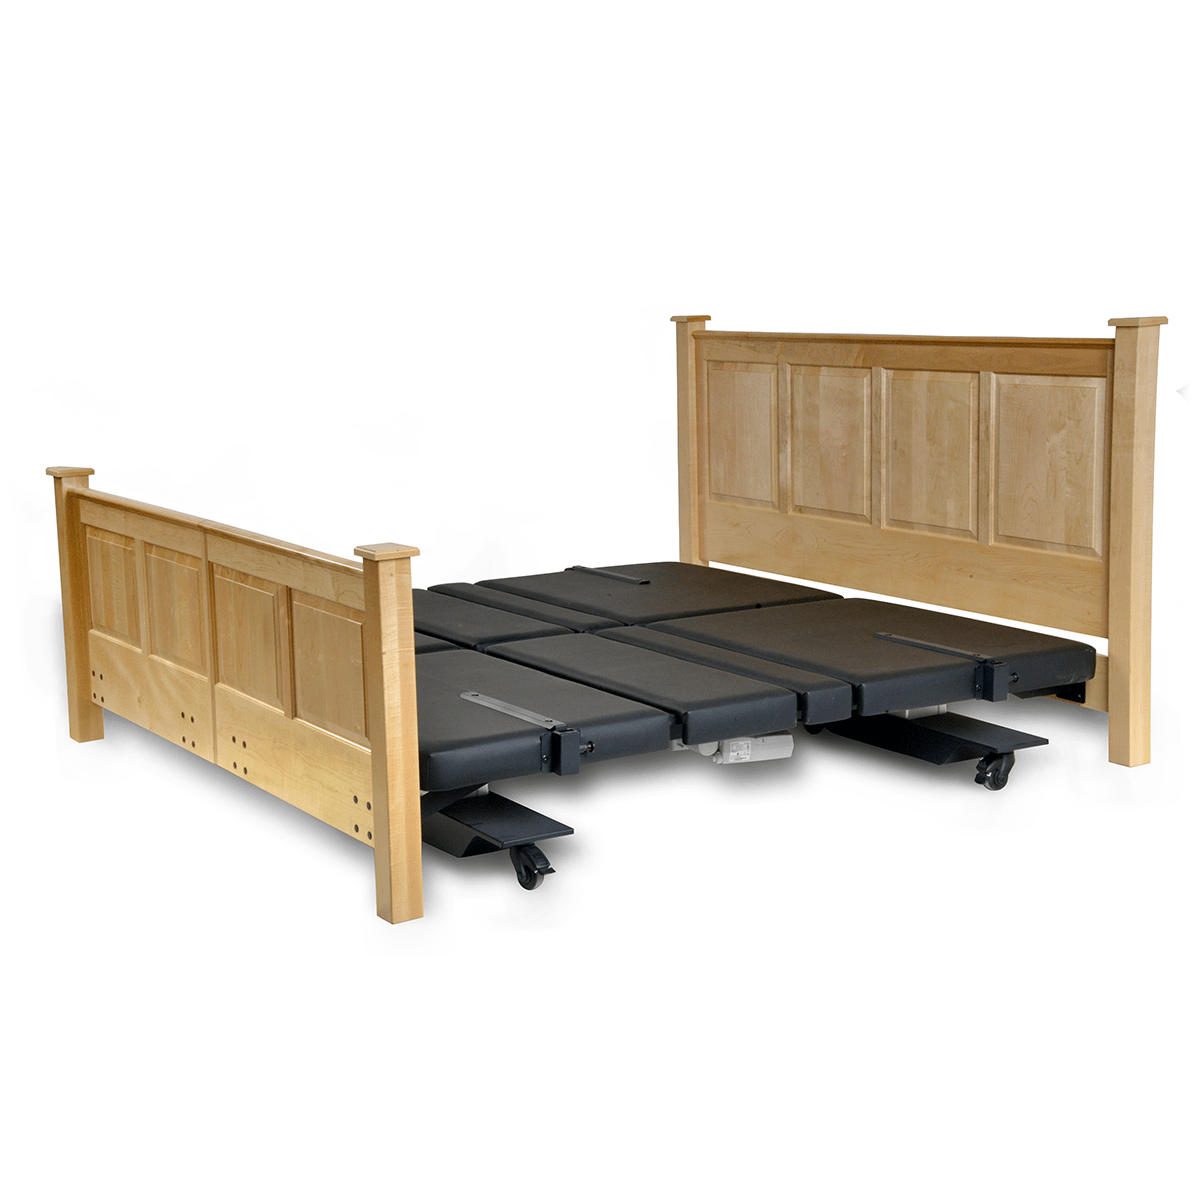 Assured Comforts Hi-Low Adjustable Beds Mobile Series Hi-Low Adjustable Beds by Assured Comfort®